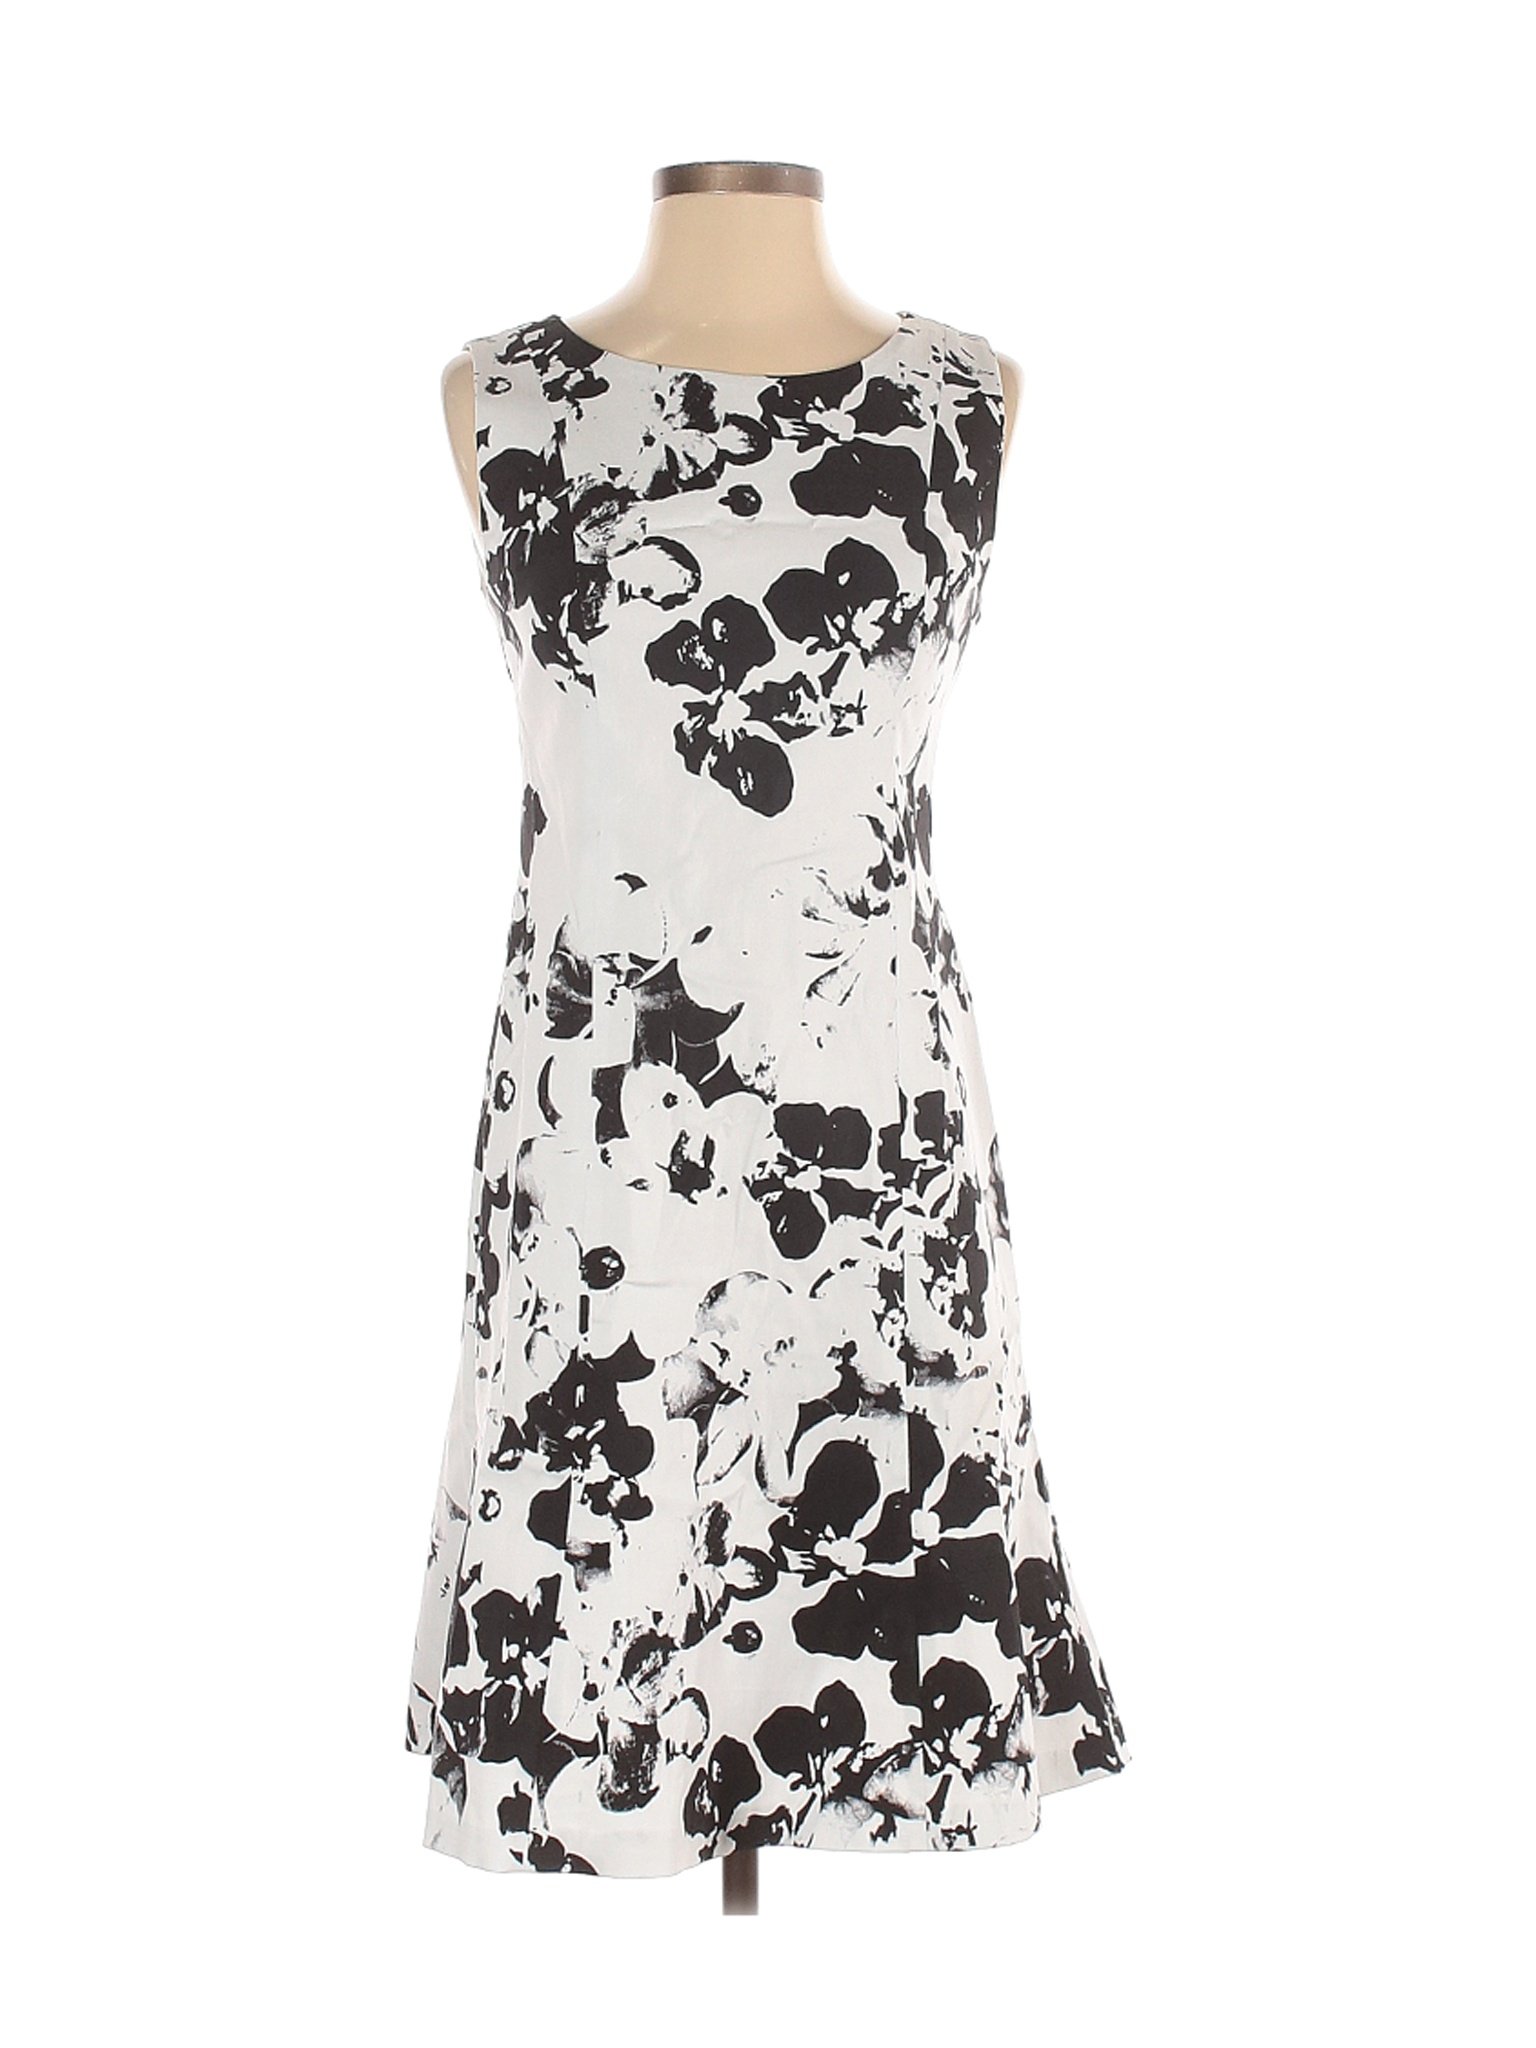 Elliott Lauren Women White Casual Dress 4 | eBay